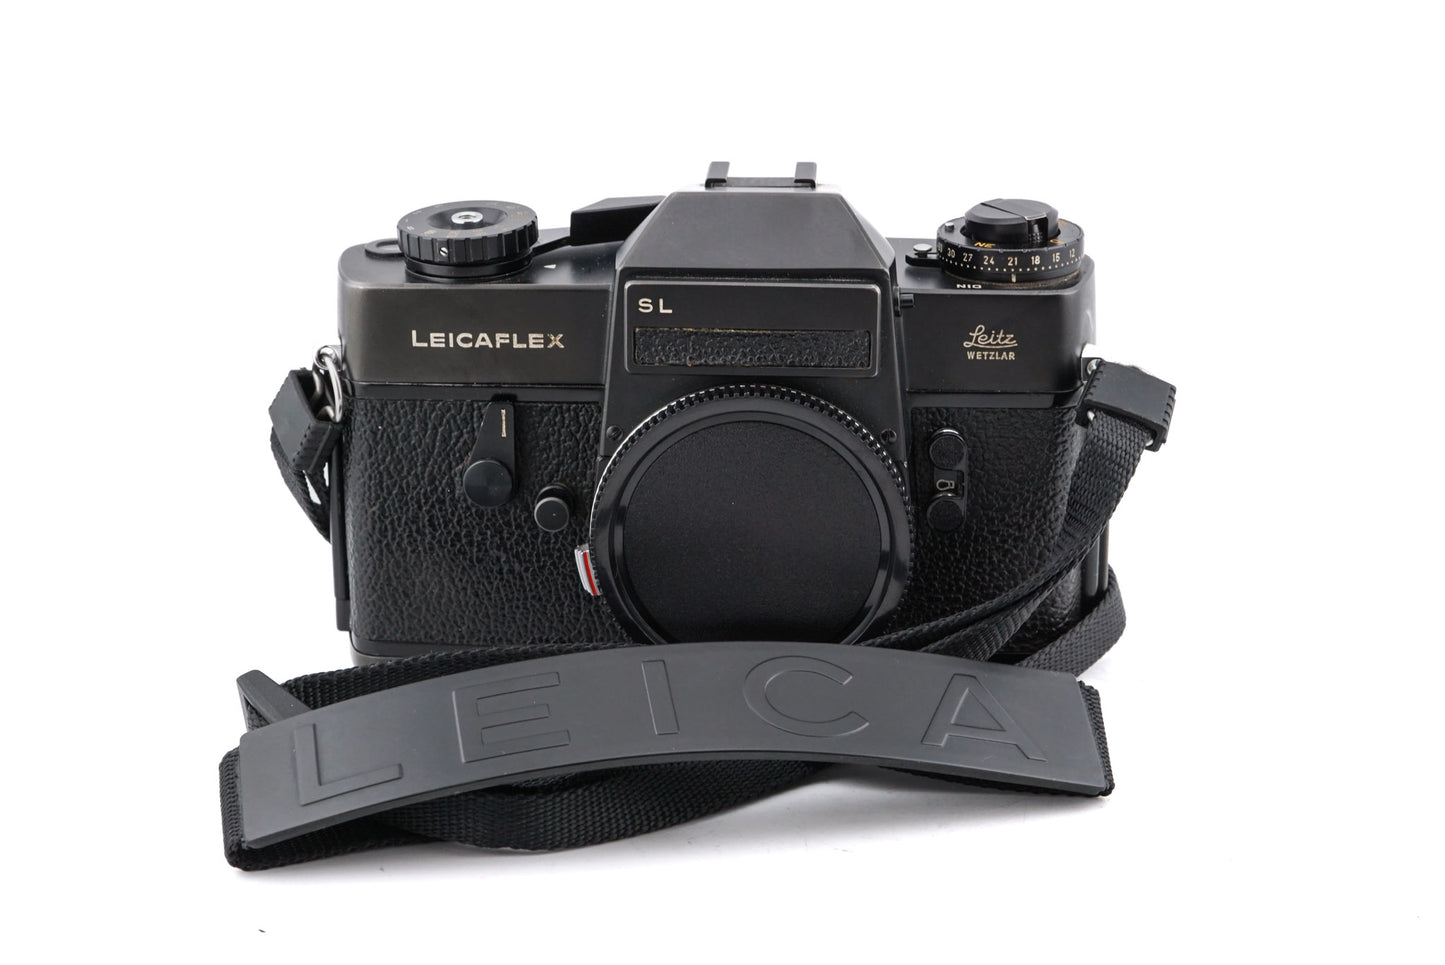 Leica Leicaflex SL